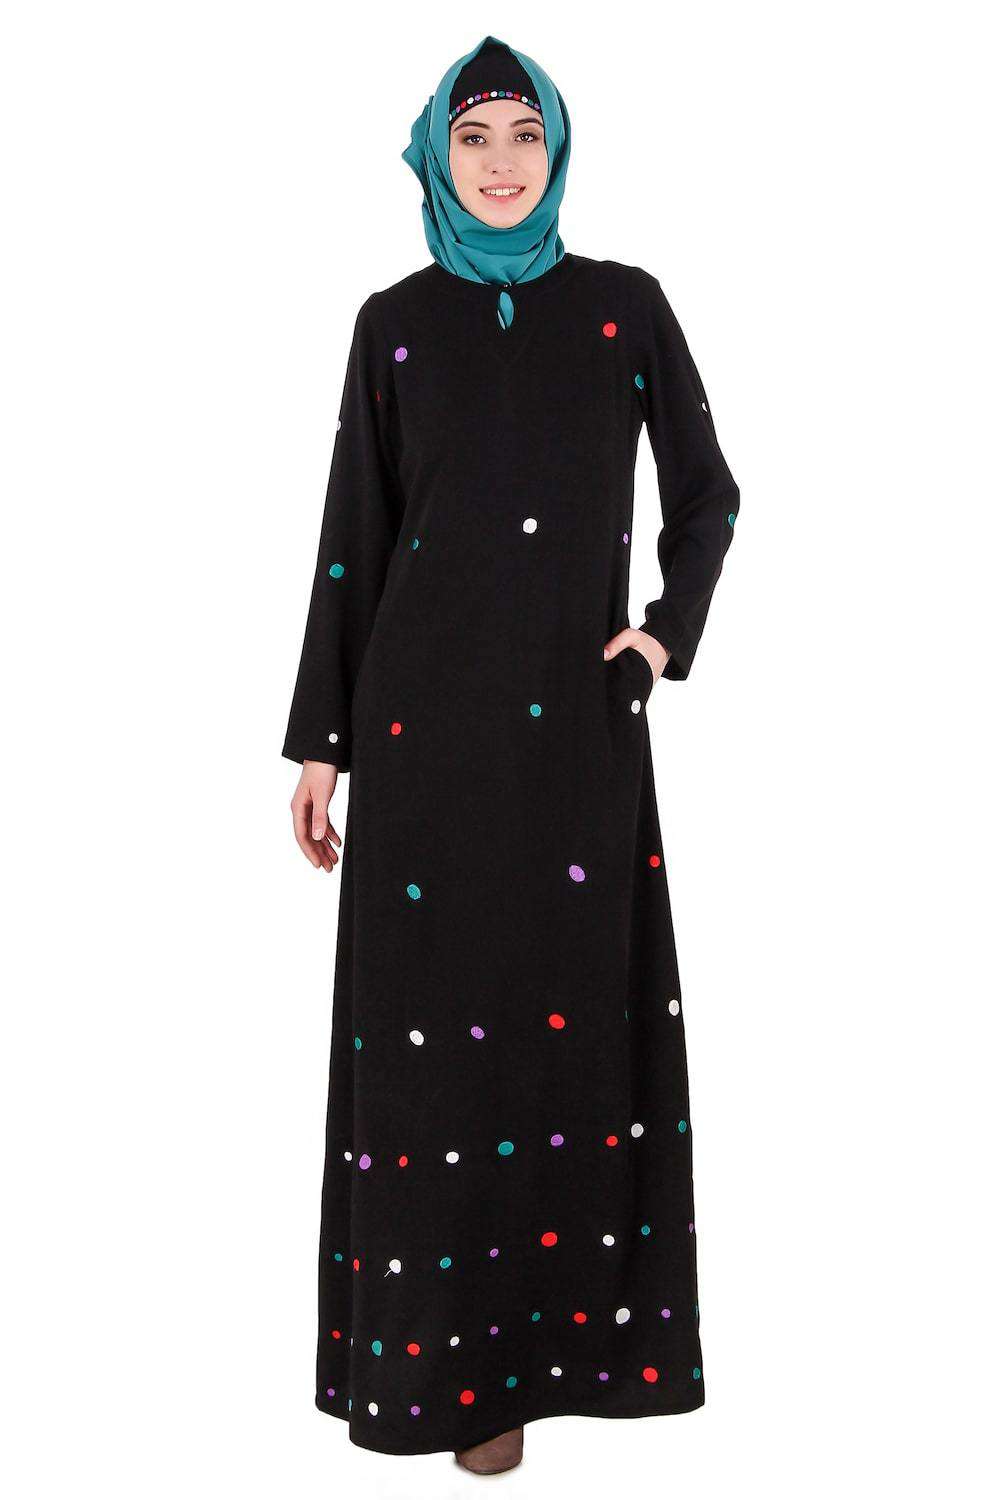 Colorful Embroidered Polka Dot Abaya